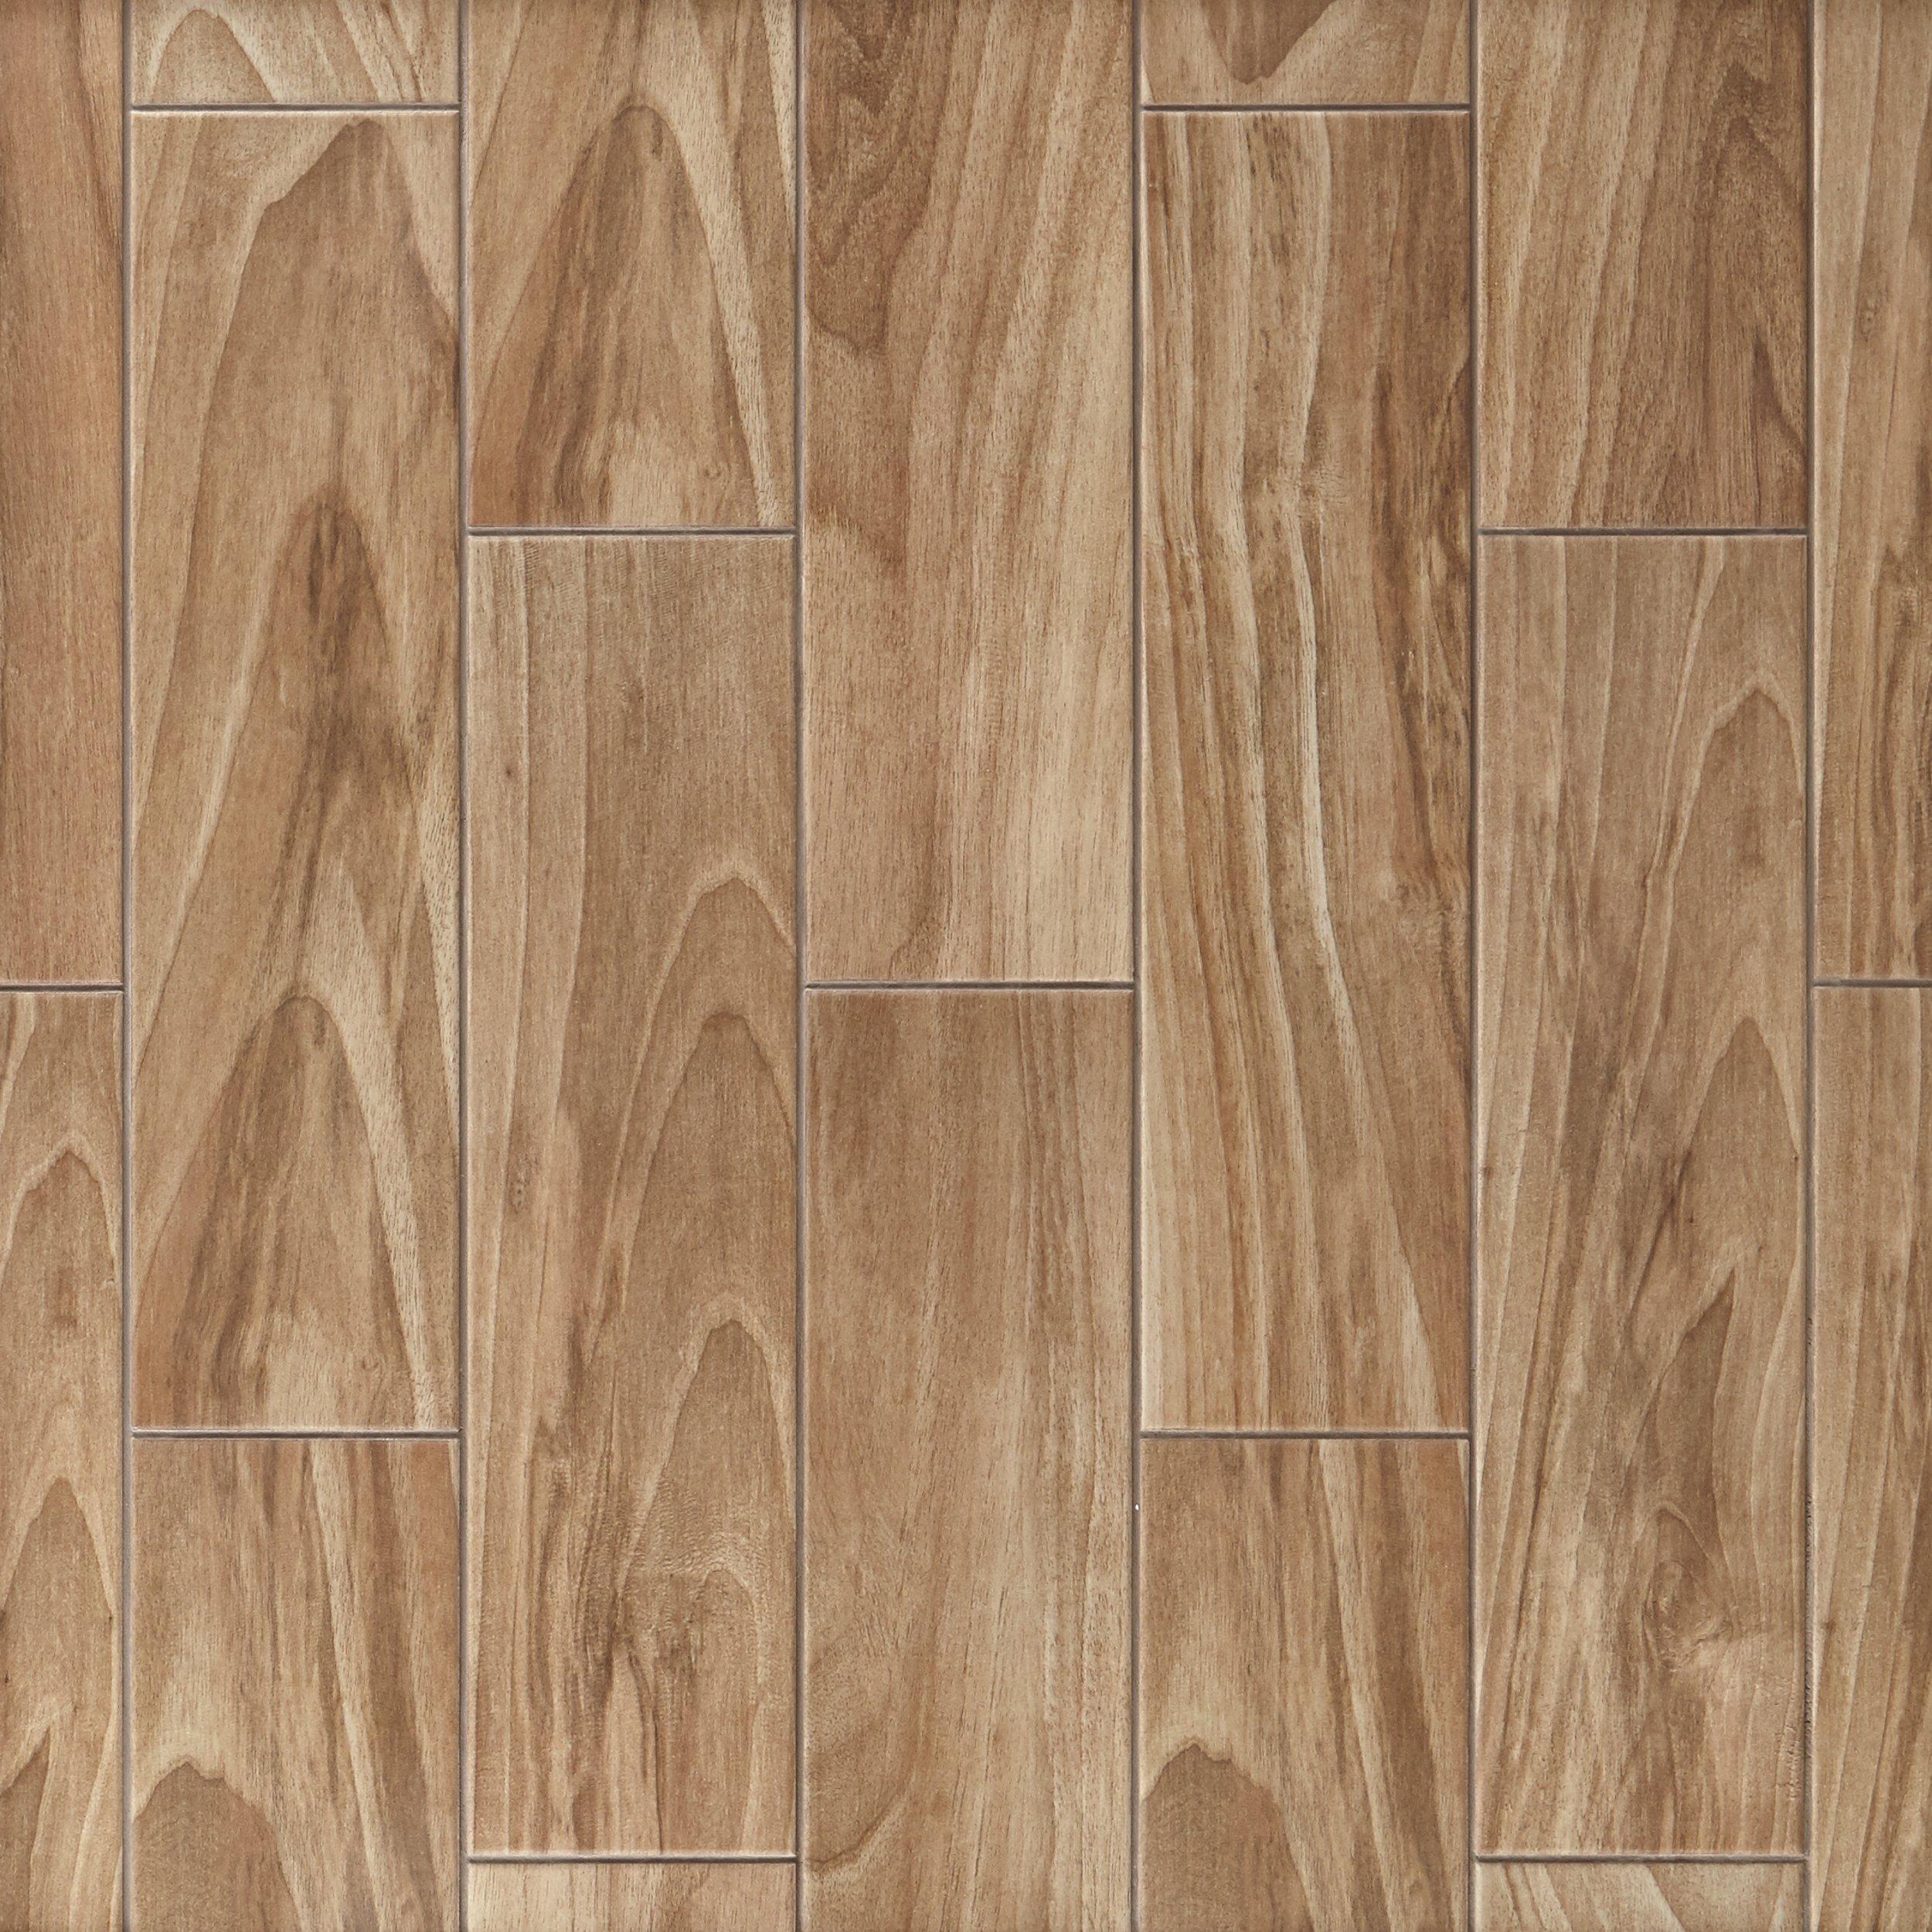 Dayton Oak Wood Plank Ceramic Tile 6 X 24 100512243 Floor